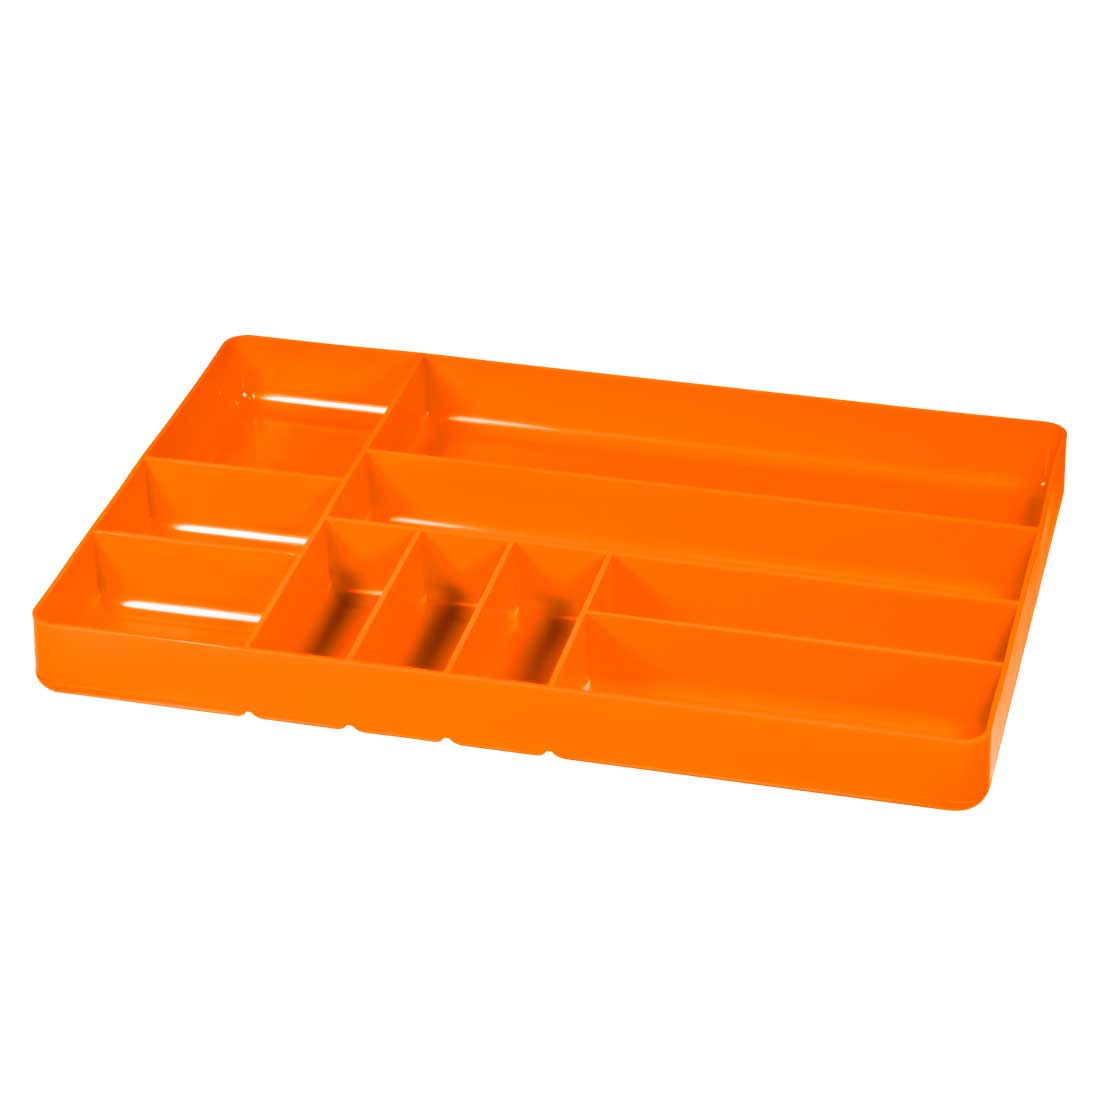 Ten Compartment Organizer Tray-Orange